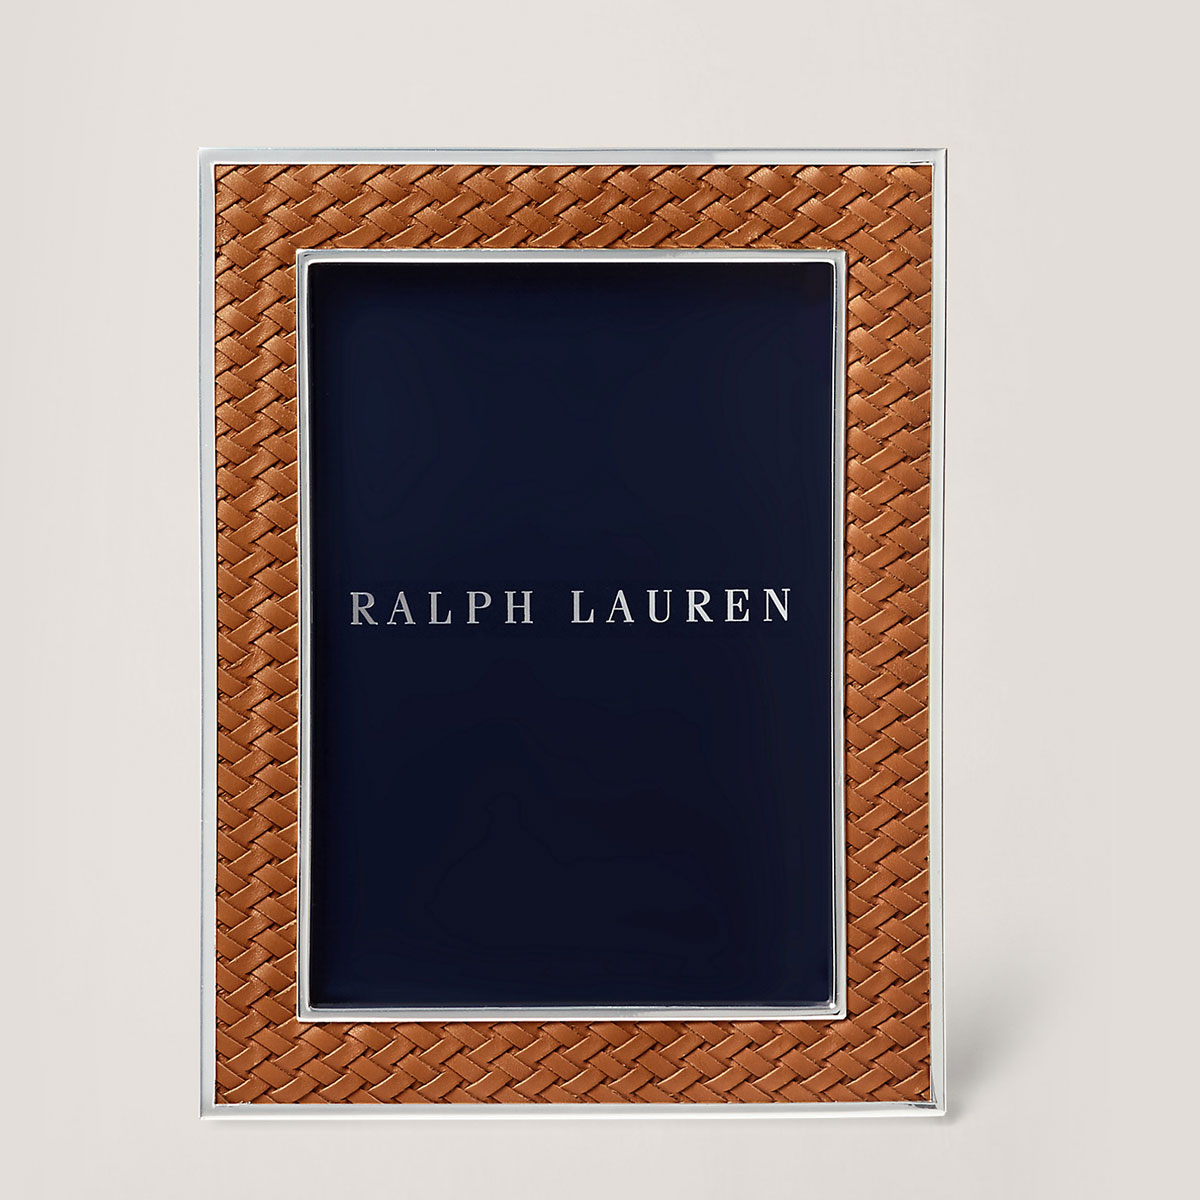 Ralph Lauren Brockton 5x7 Frame, Saddle